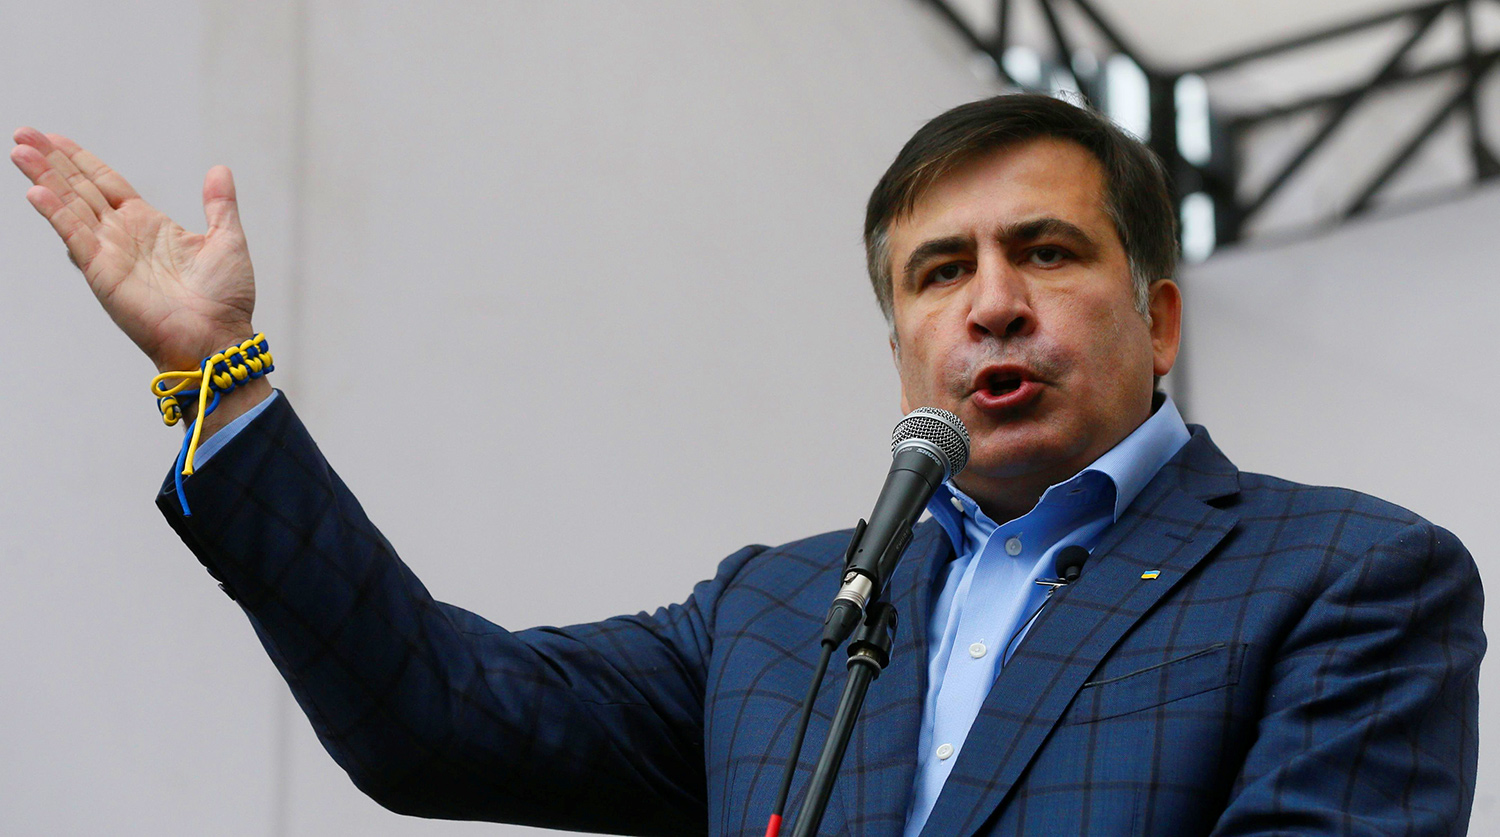 Саакашвили об экономике Украины: с закрытыми глазами идём в пропасть